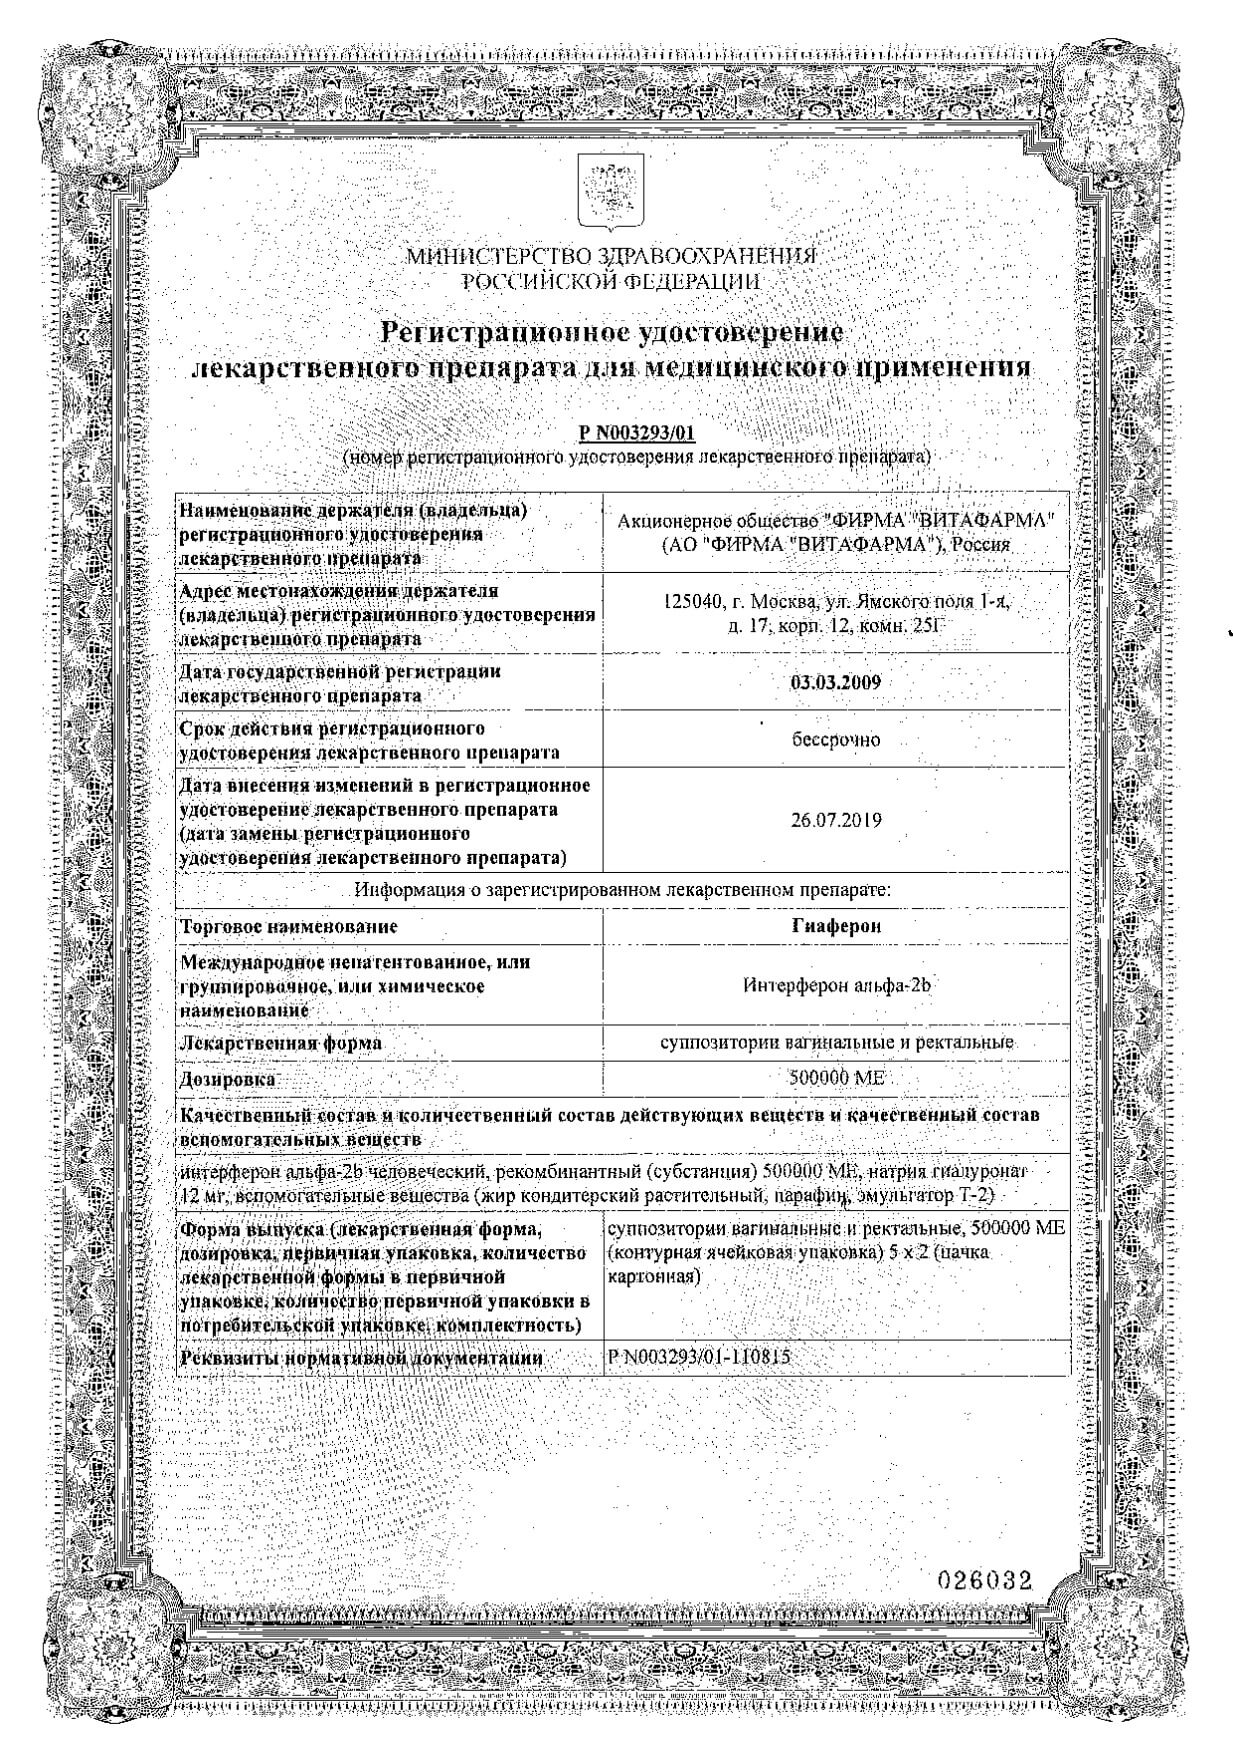 Гиаферон супп. вагинальные и ректальные 500000МЕ 10шт: сертификат